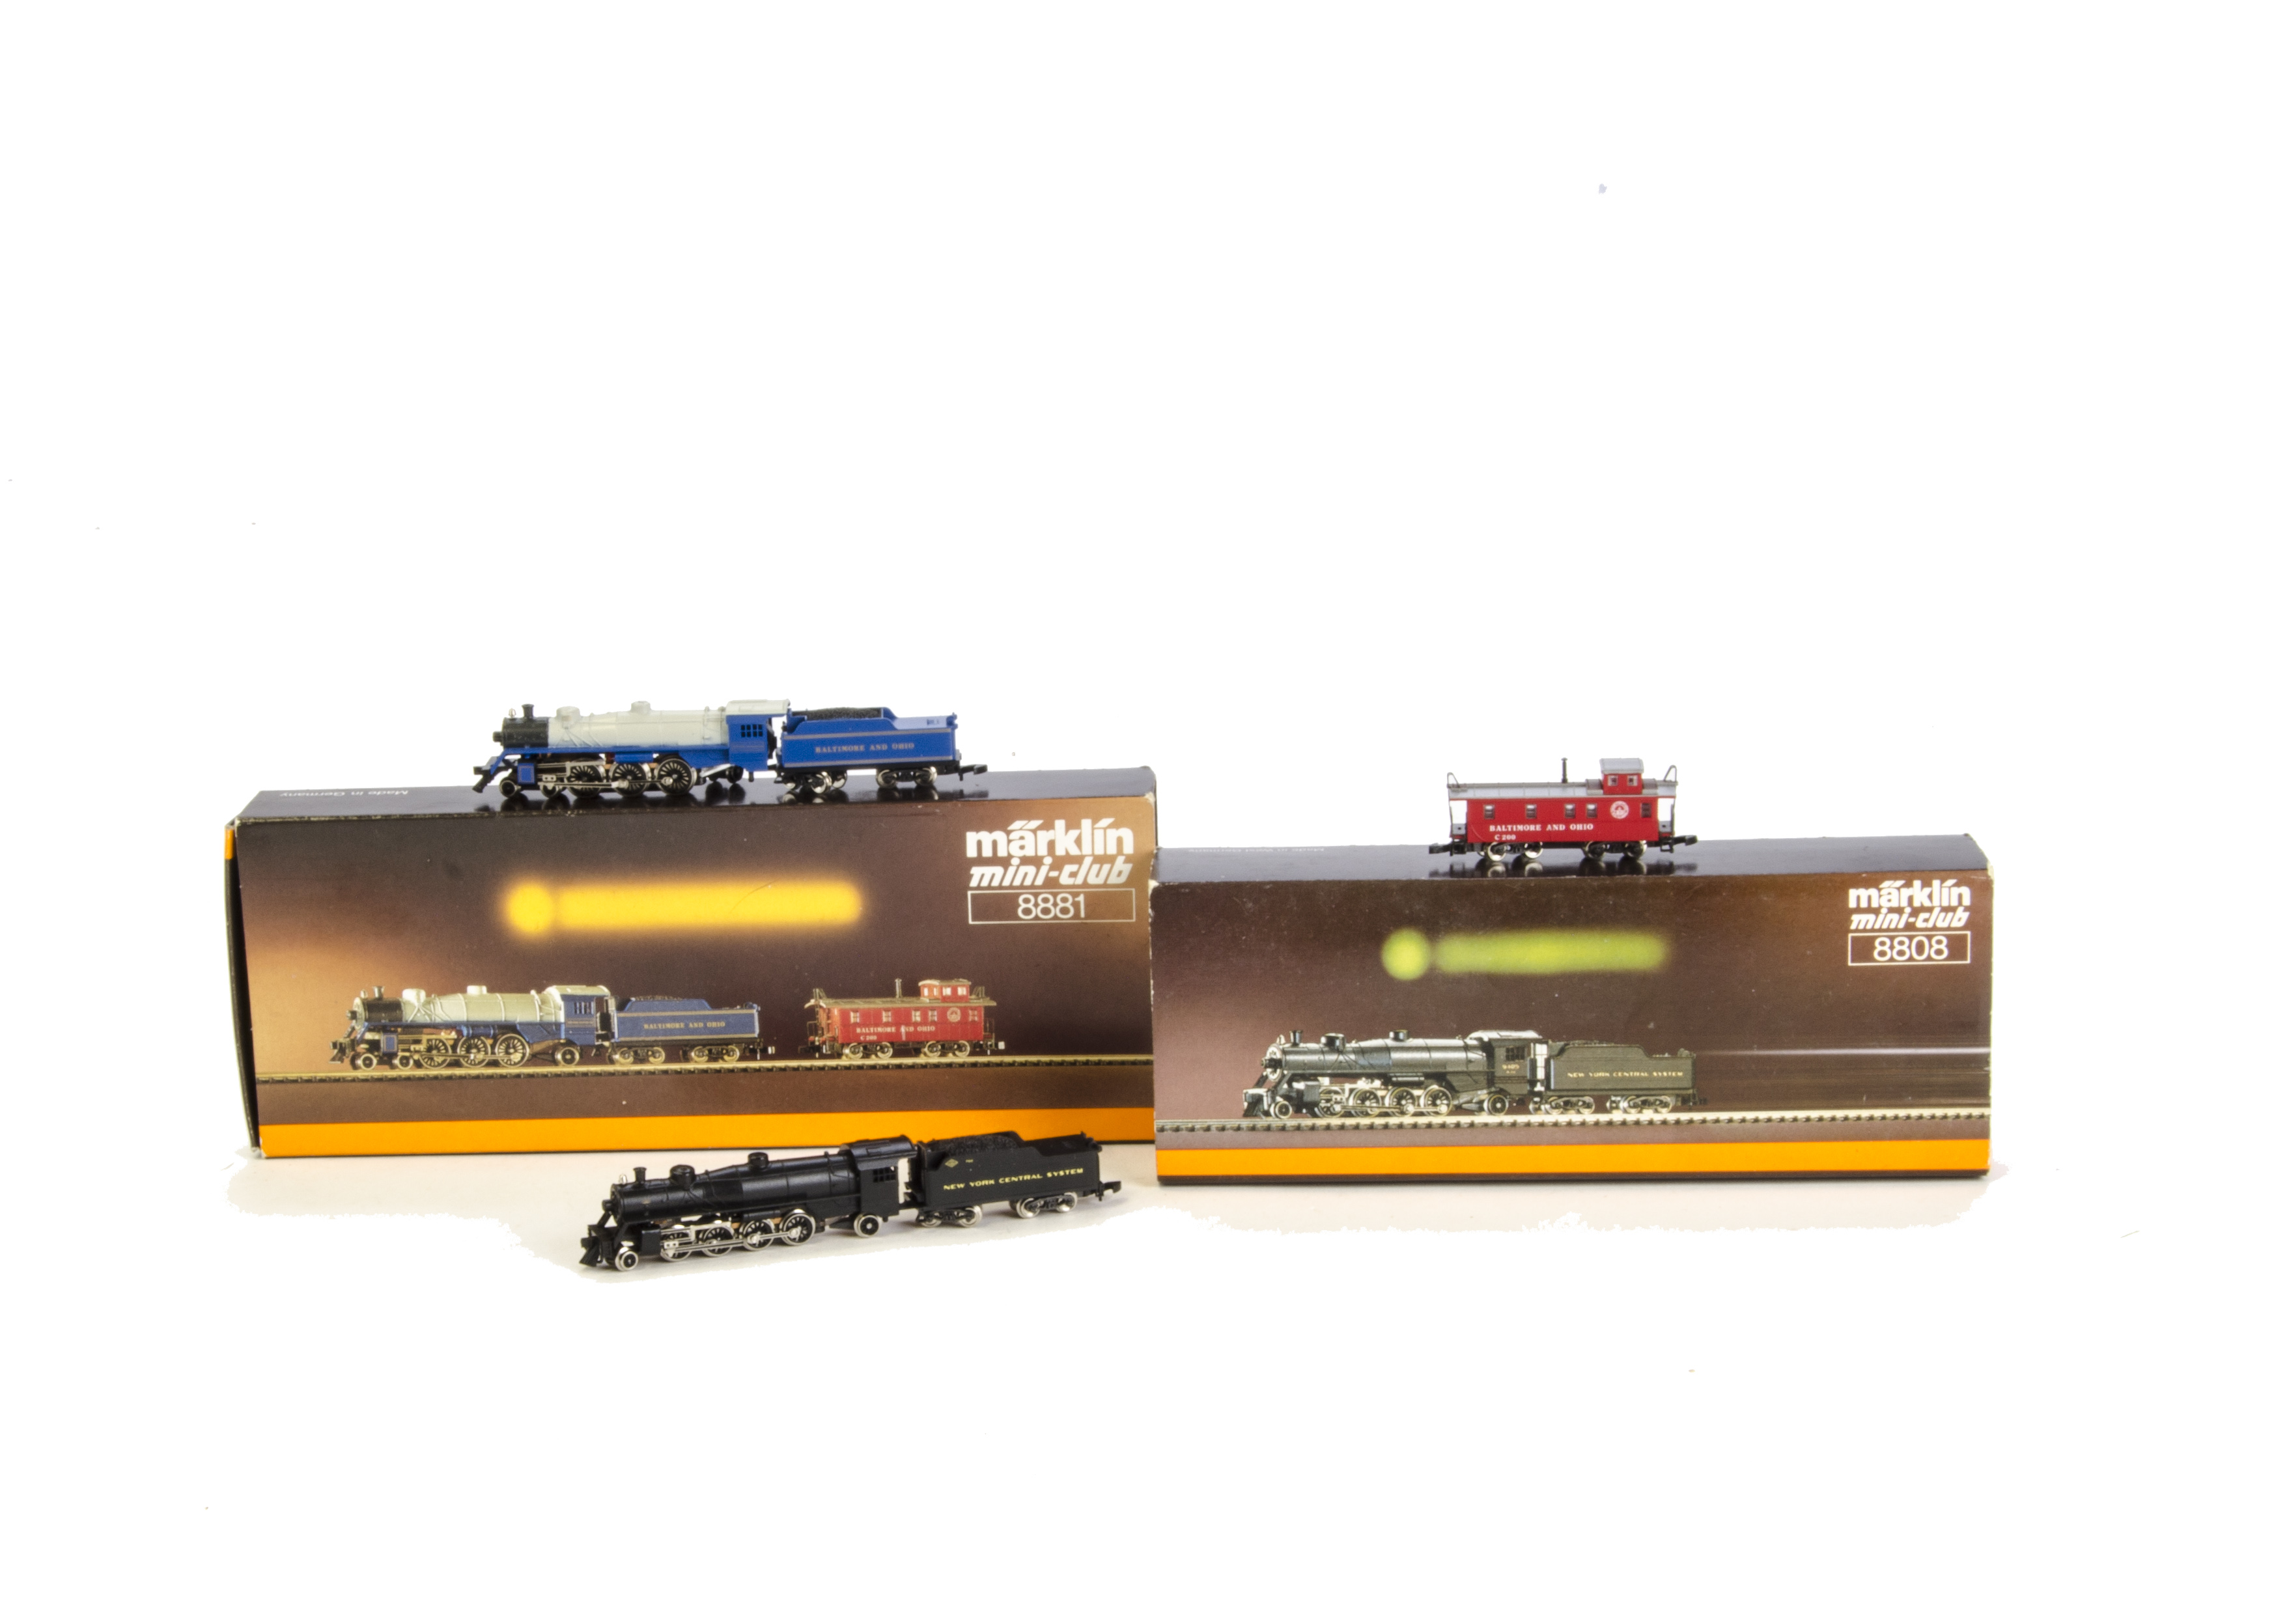 Z Gauge American Locomotives by Märklin Mini-Club: comprising ref 8881 Baltimore and Ohio 4-6-2